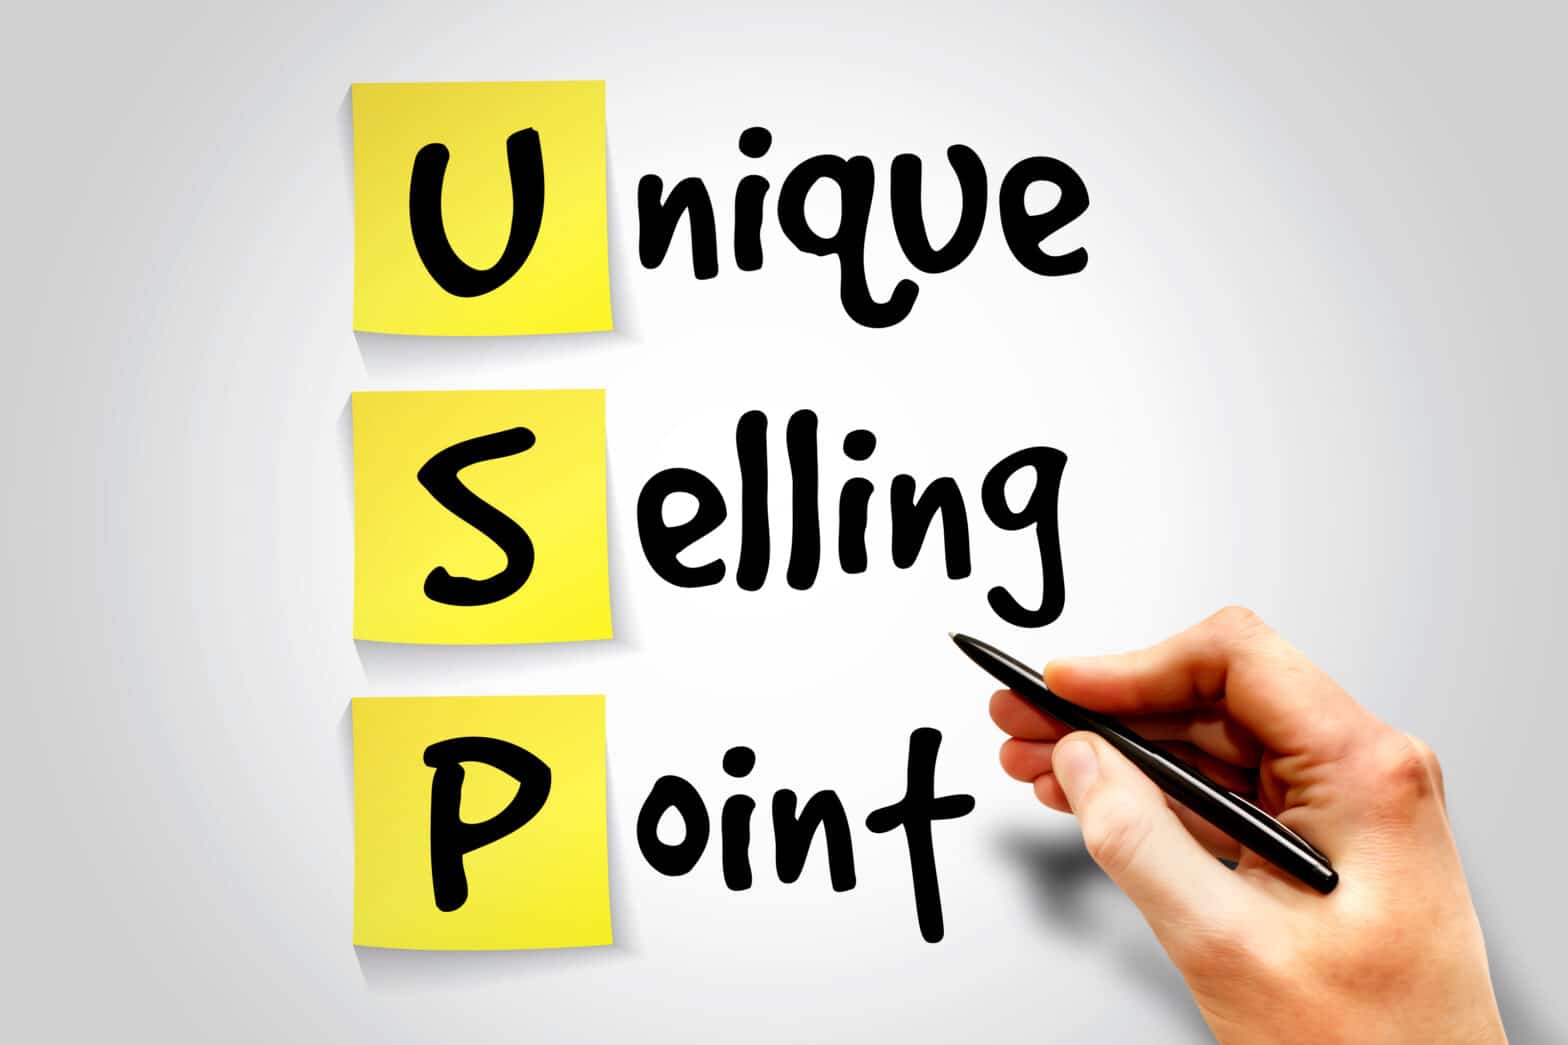 نظرية USP - عرض البيع الفريد التسويقية